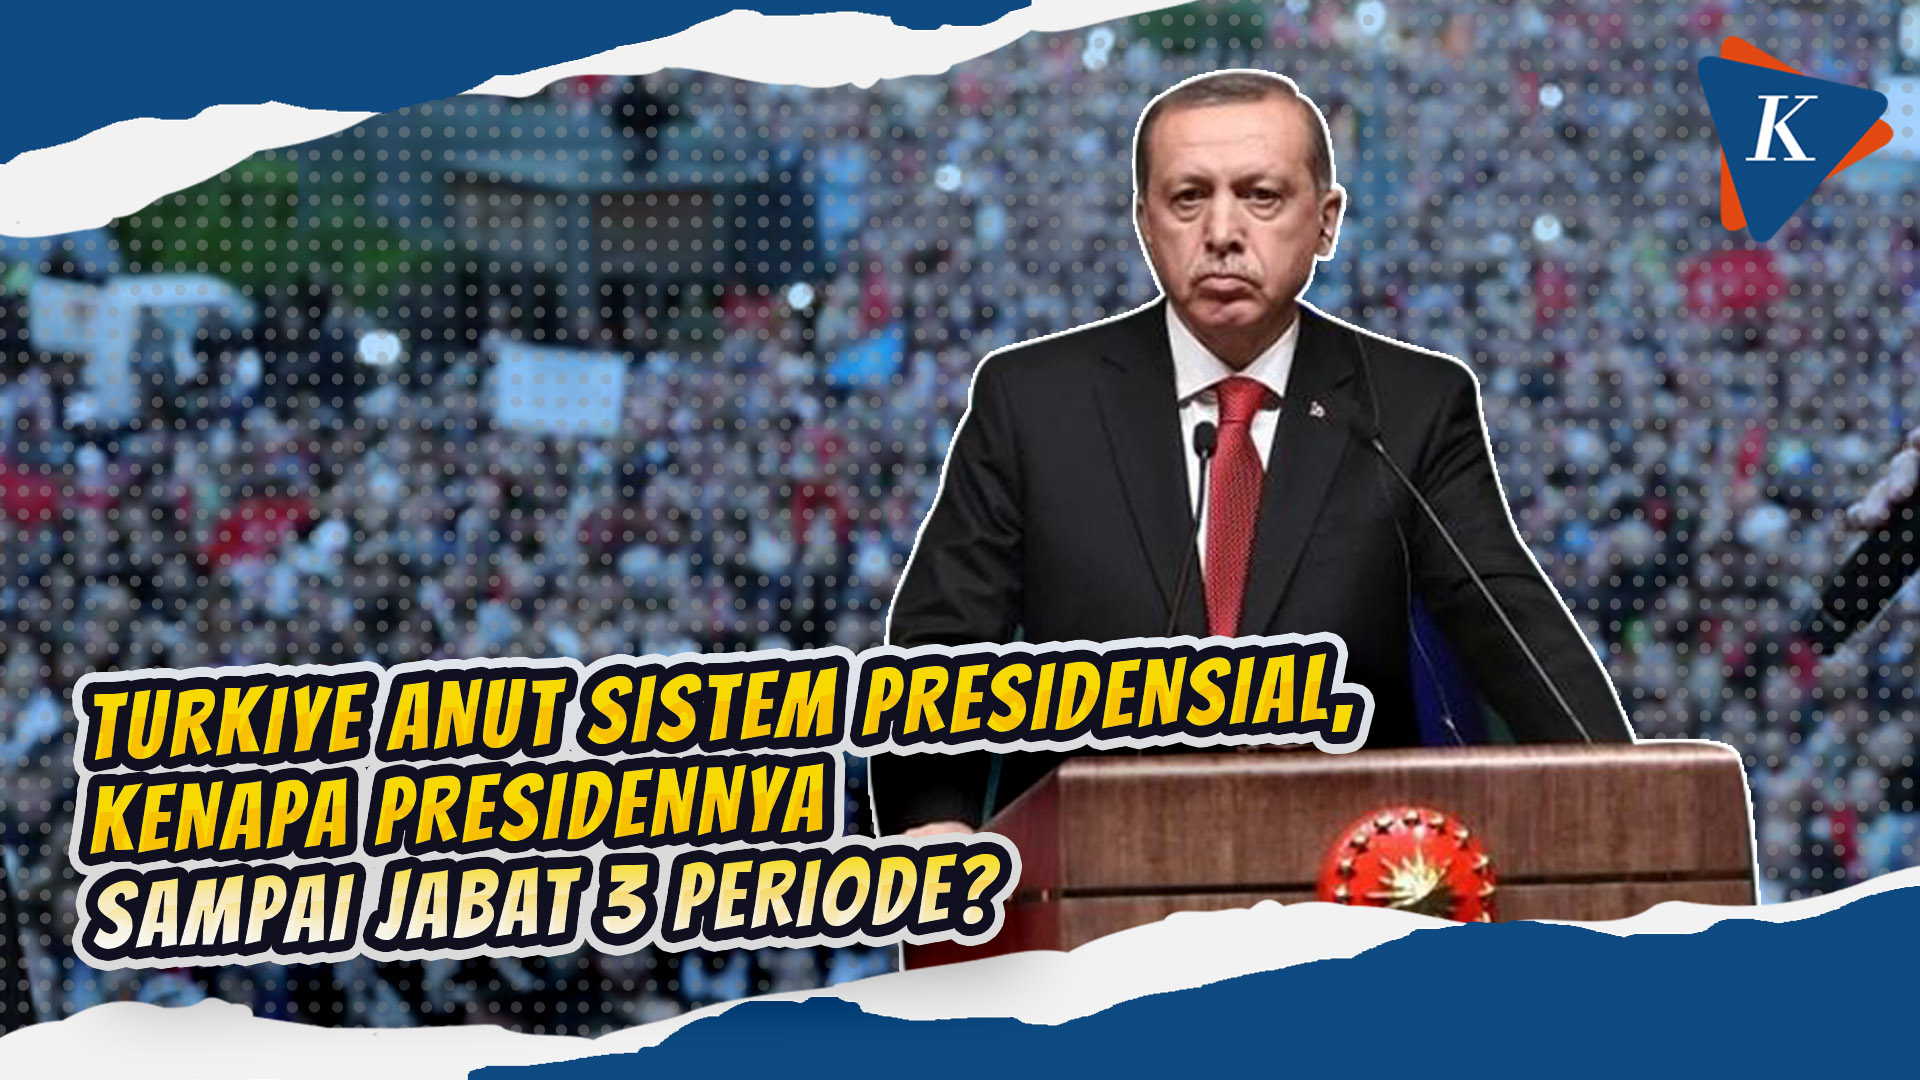 Jejak Politik Erdogan, Perdana Menteri dan Presiden Turkiye 3 Periode